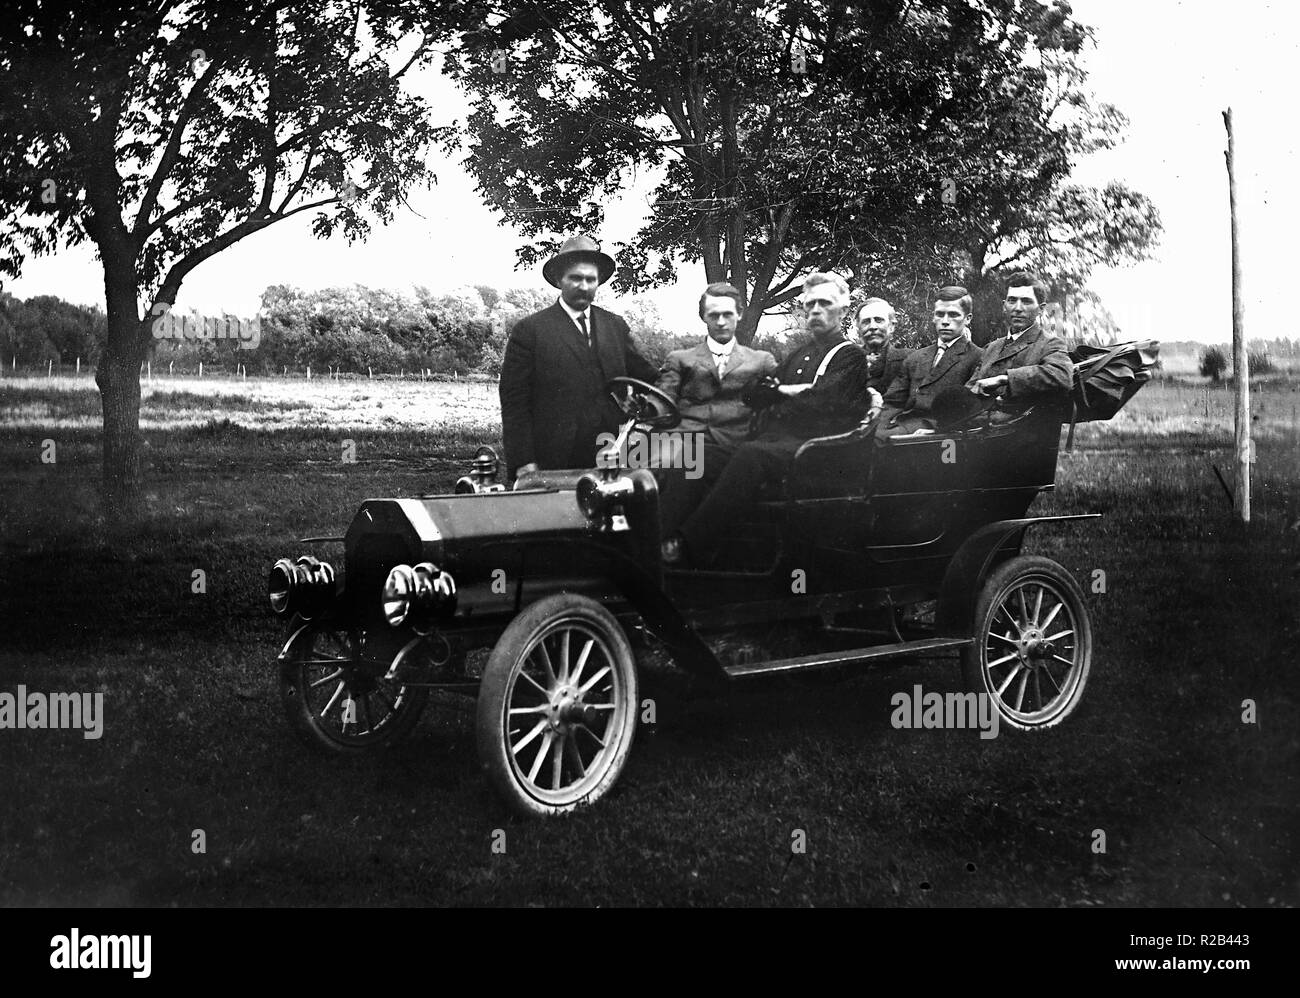 Tutti i ragazzi sono pronti a fare un giro nel loro nuovo, moderno, periodo automobile, ca. 1910. Foto Stock